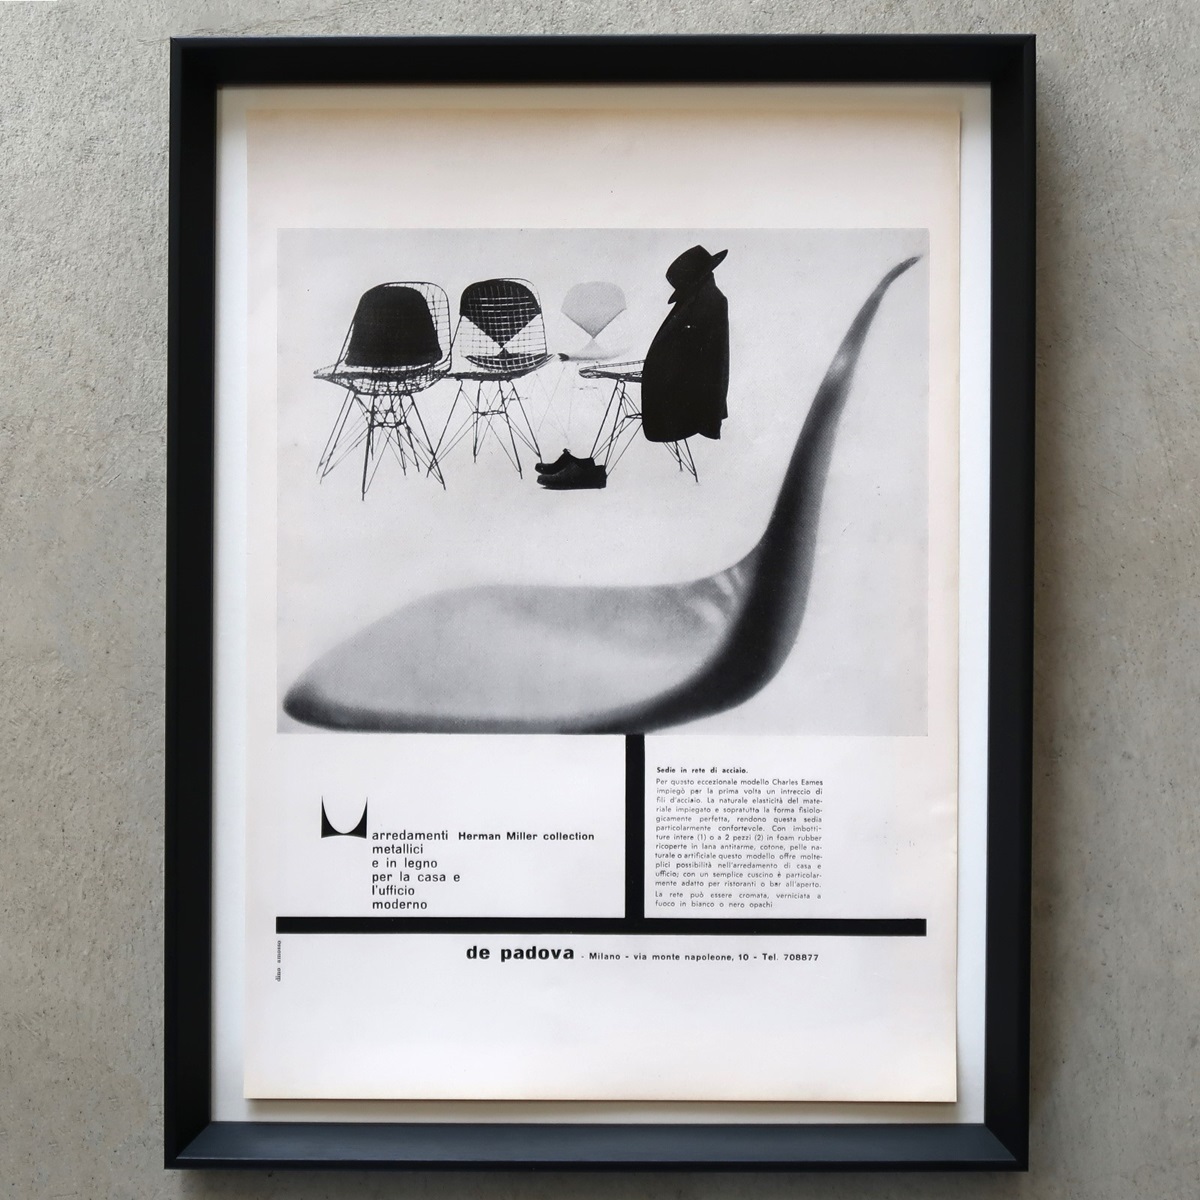 Herman Miller Herman Miller 1962 год Eames боковой ракушка стул тросик сетка Италия Vintage реклама рамка товар редкость постер редкостный 